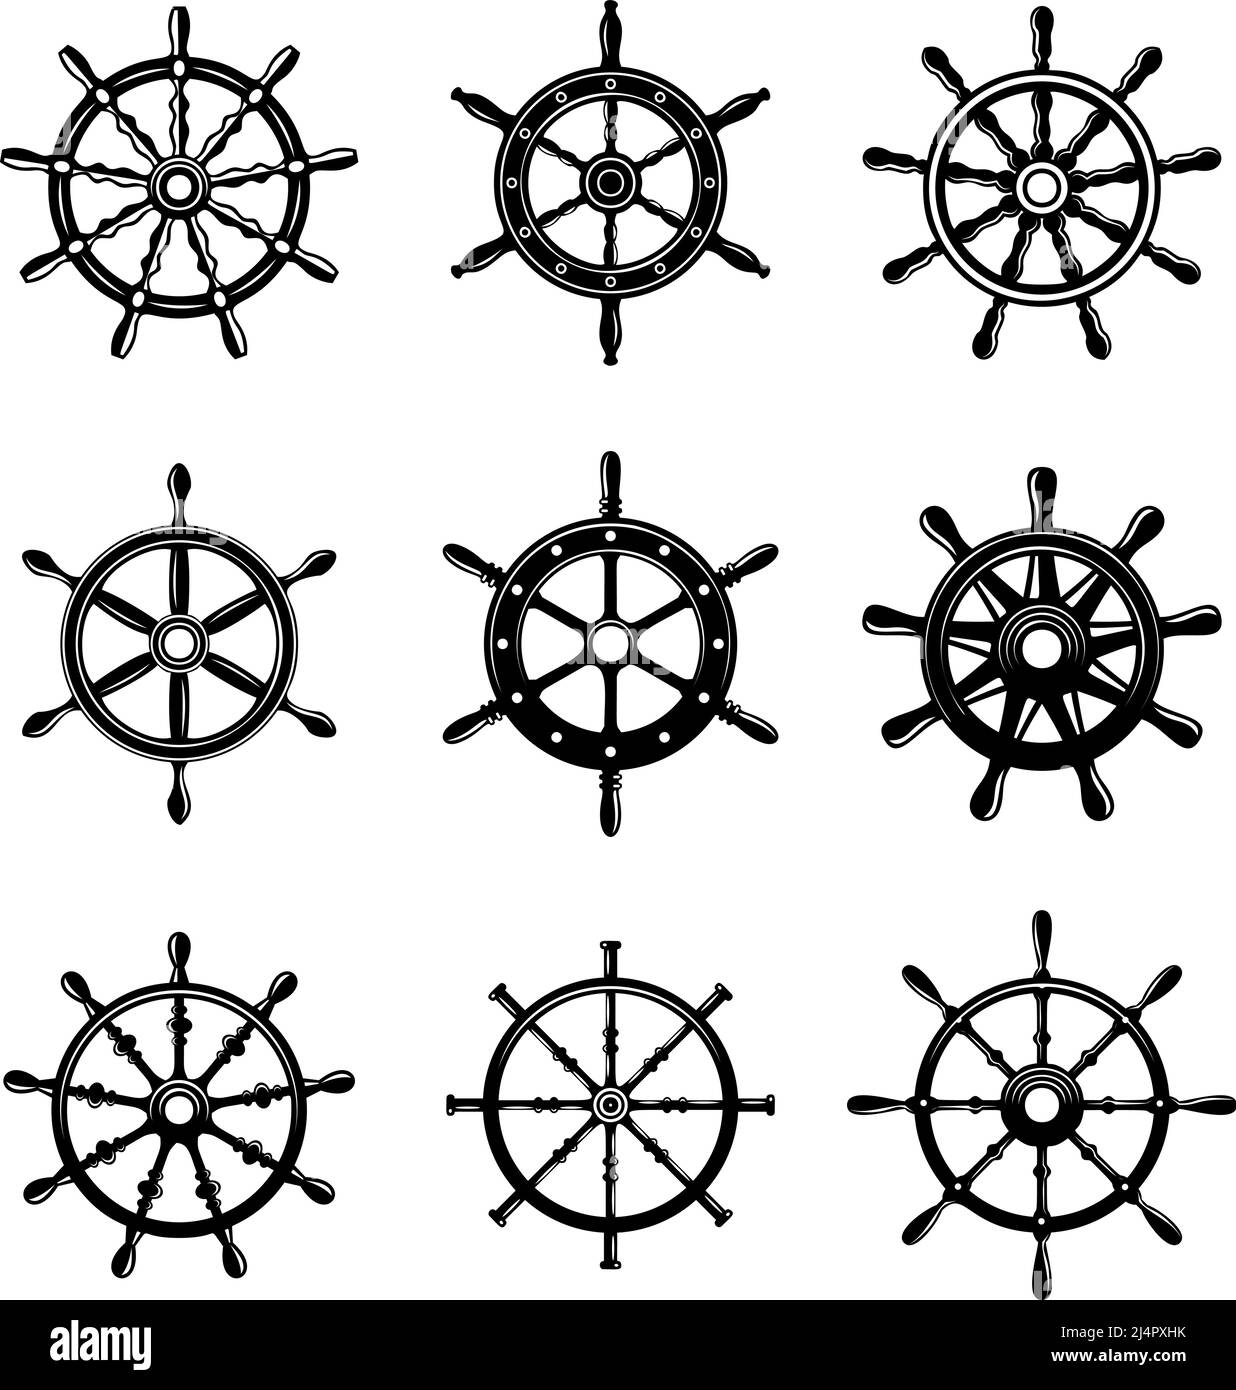 Set of illustrations of ship wheel. Design element for logo, label, sign, emblem, poster. Vector illustration Stock Vector